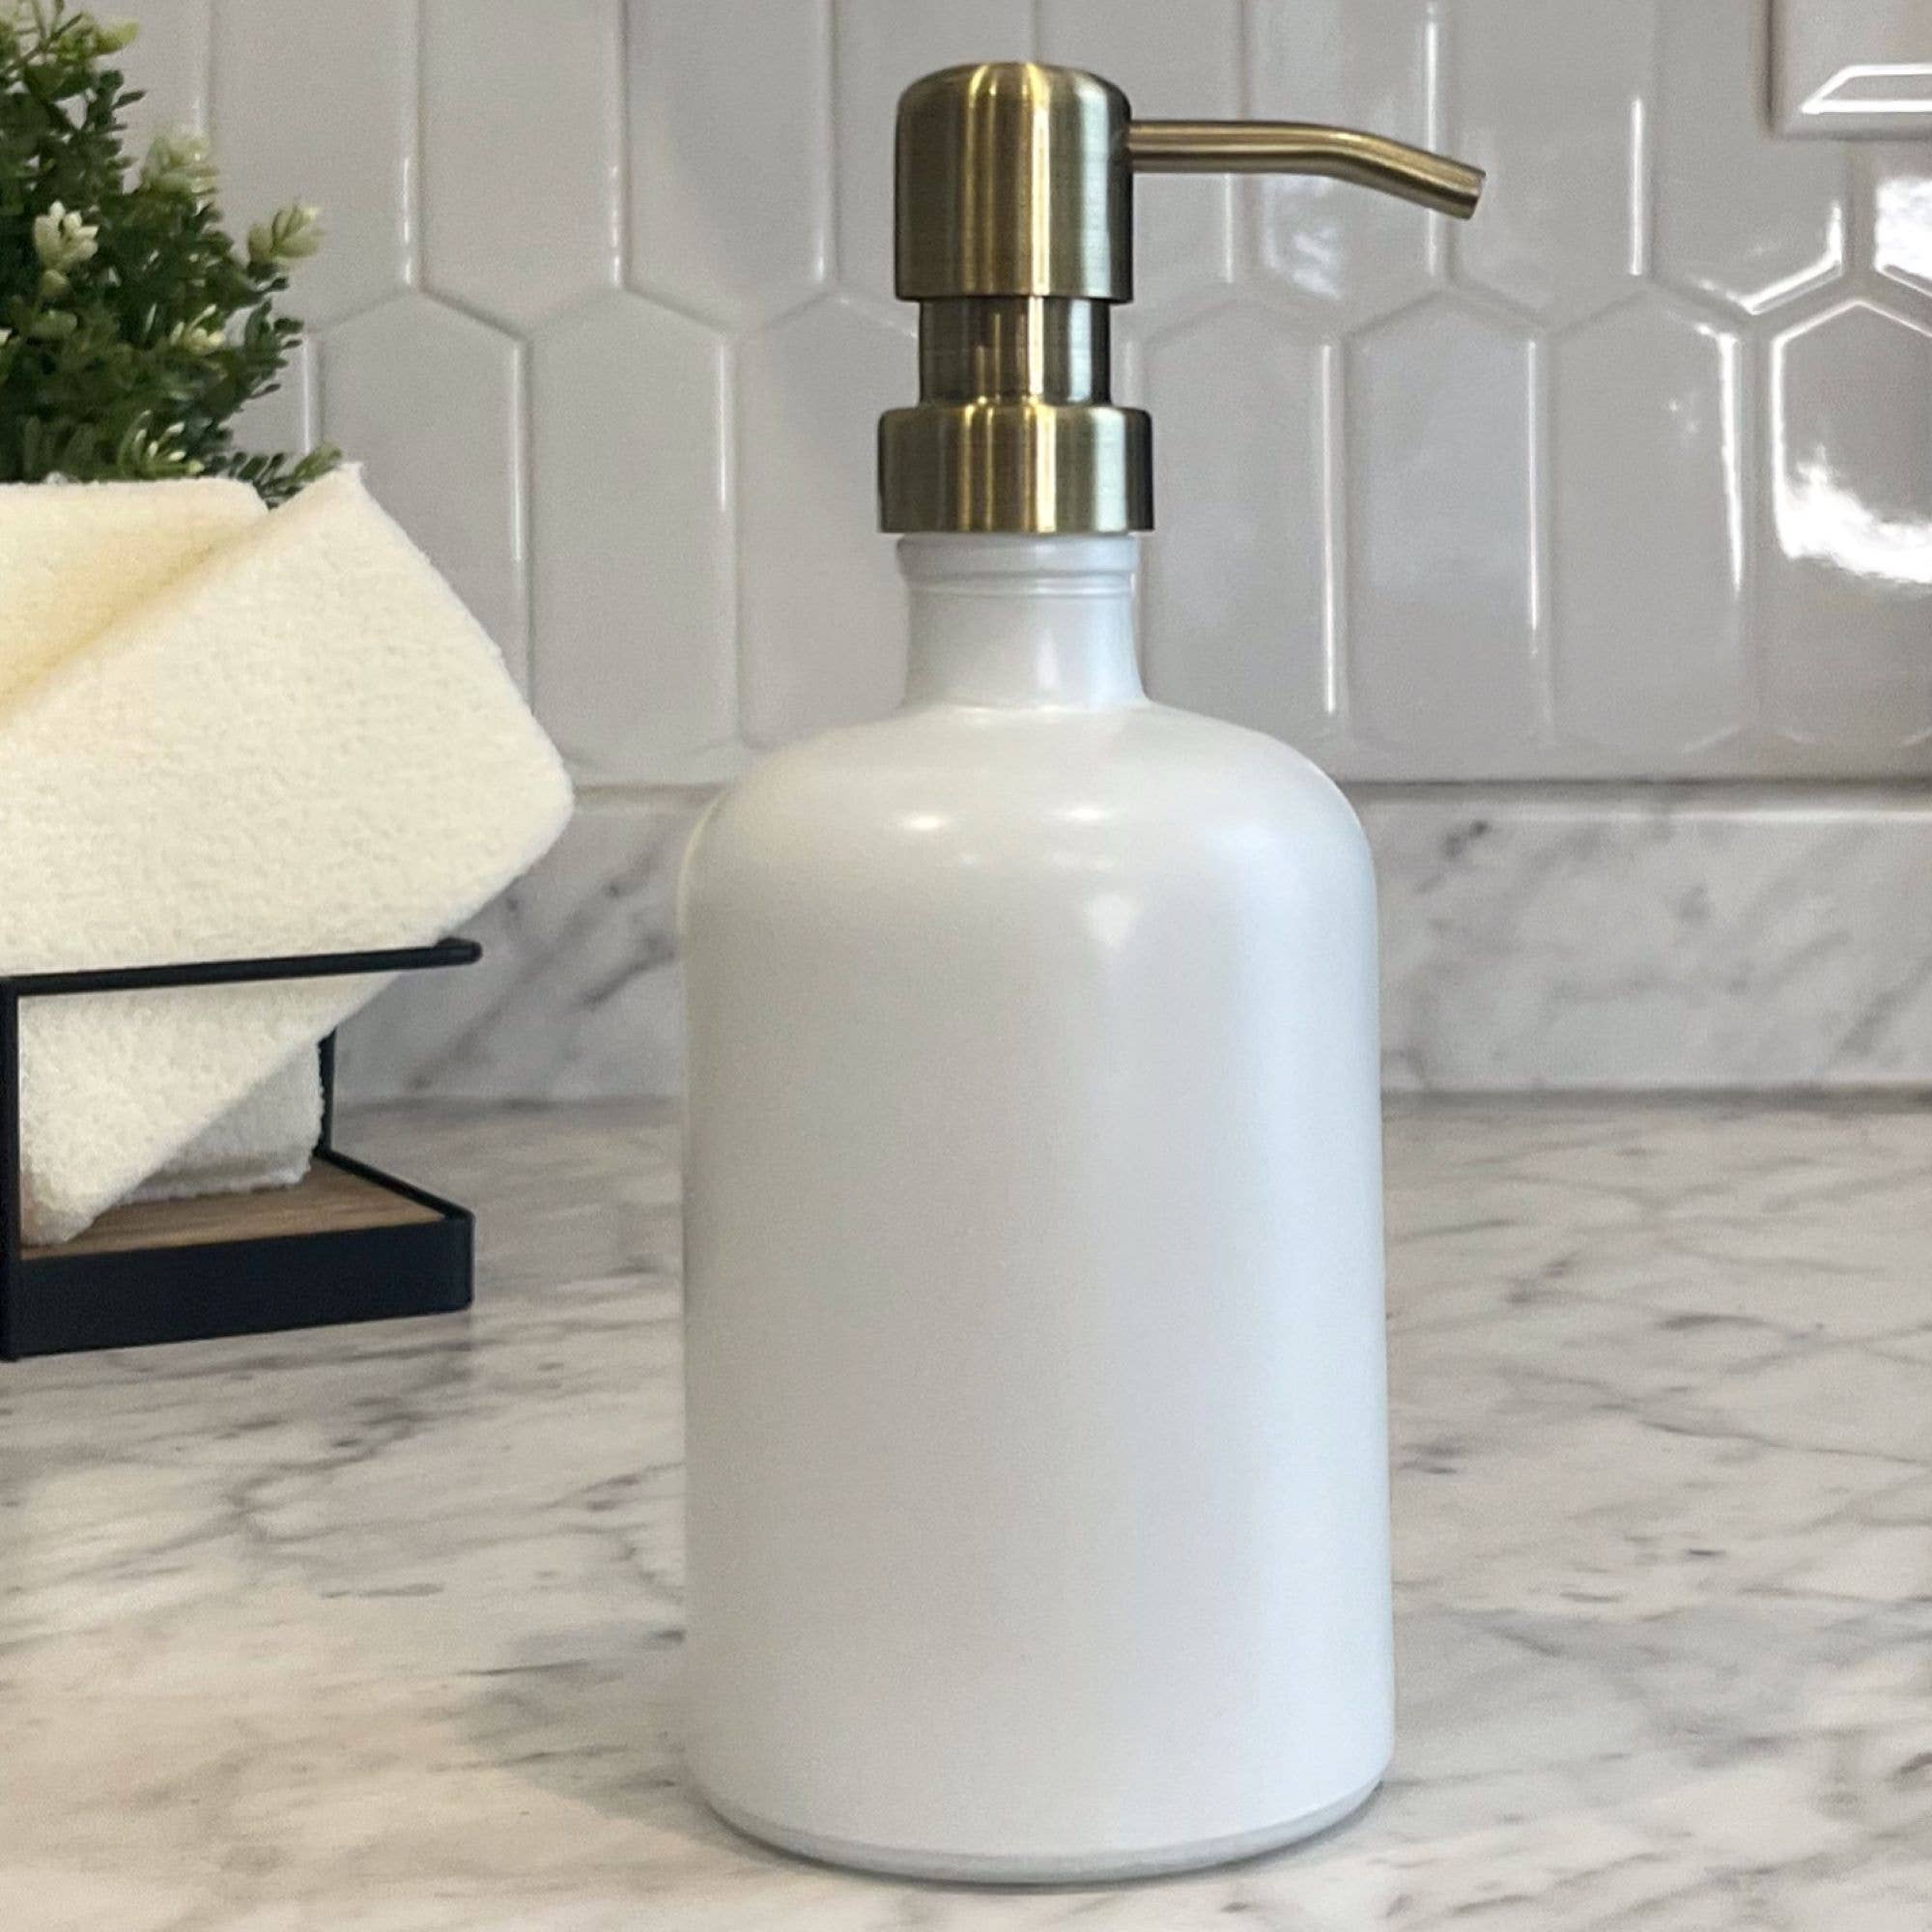 16oz White Matte Glass Soap Dispenser bottle w/ metal pumps.